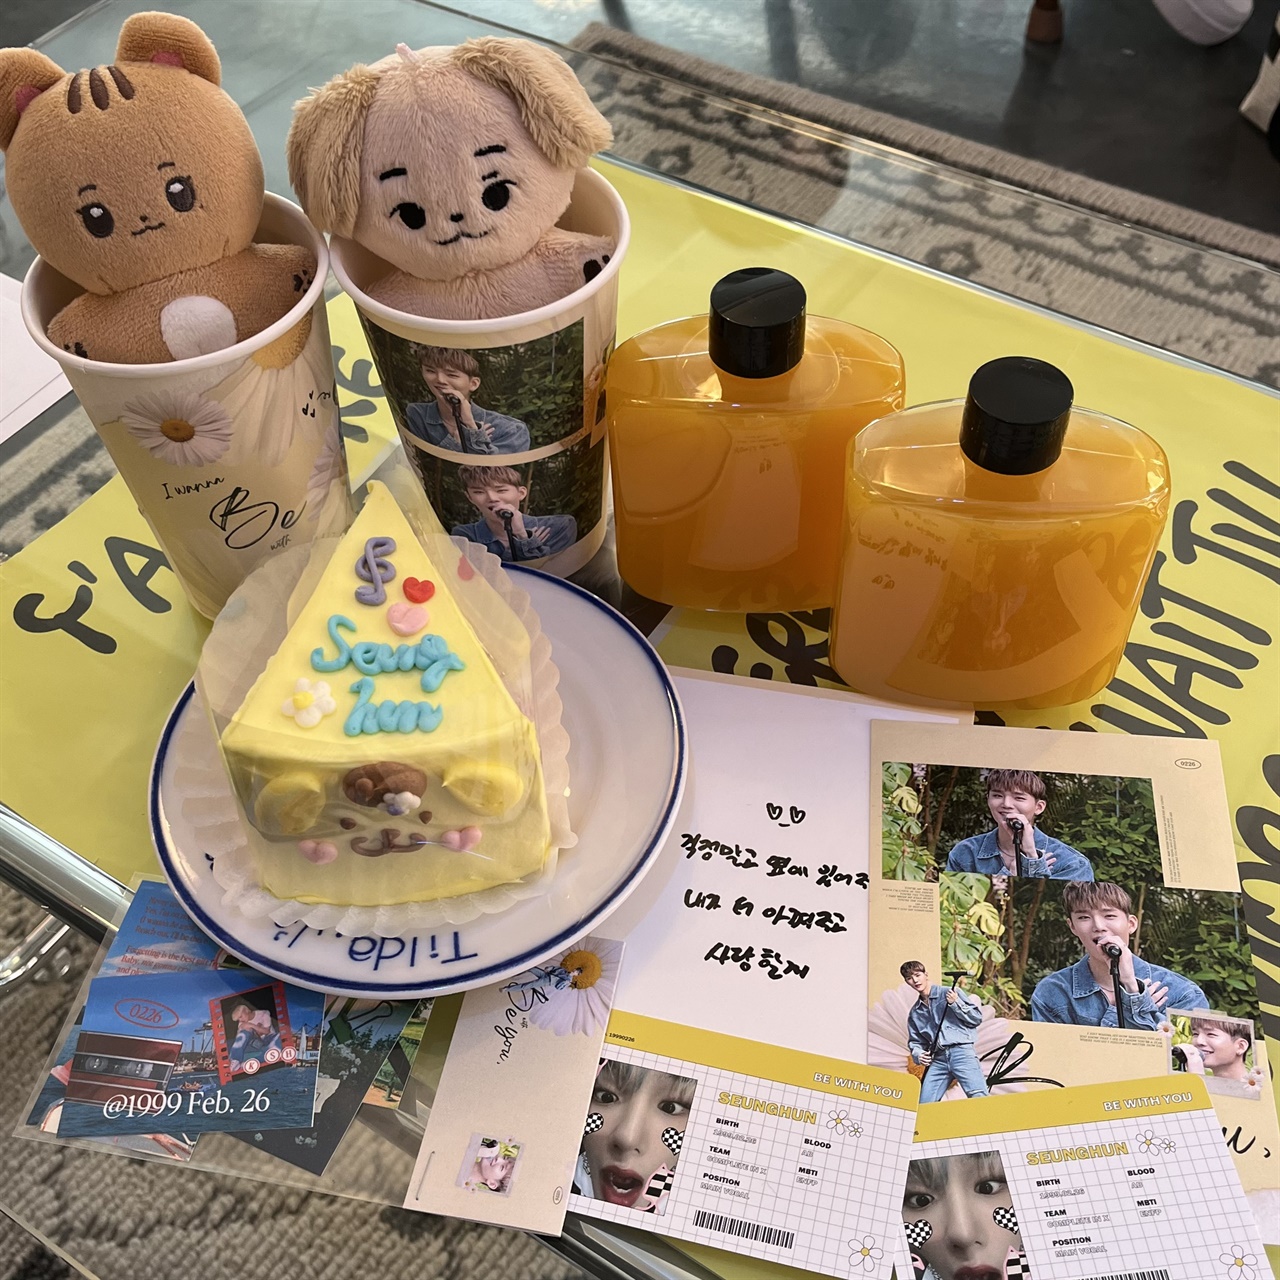  CIX 승훈의 생일 카페에서 판매하는 음료와 조각 케이크